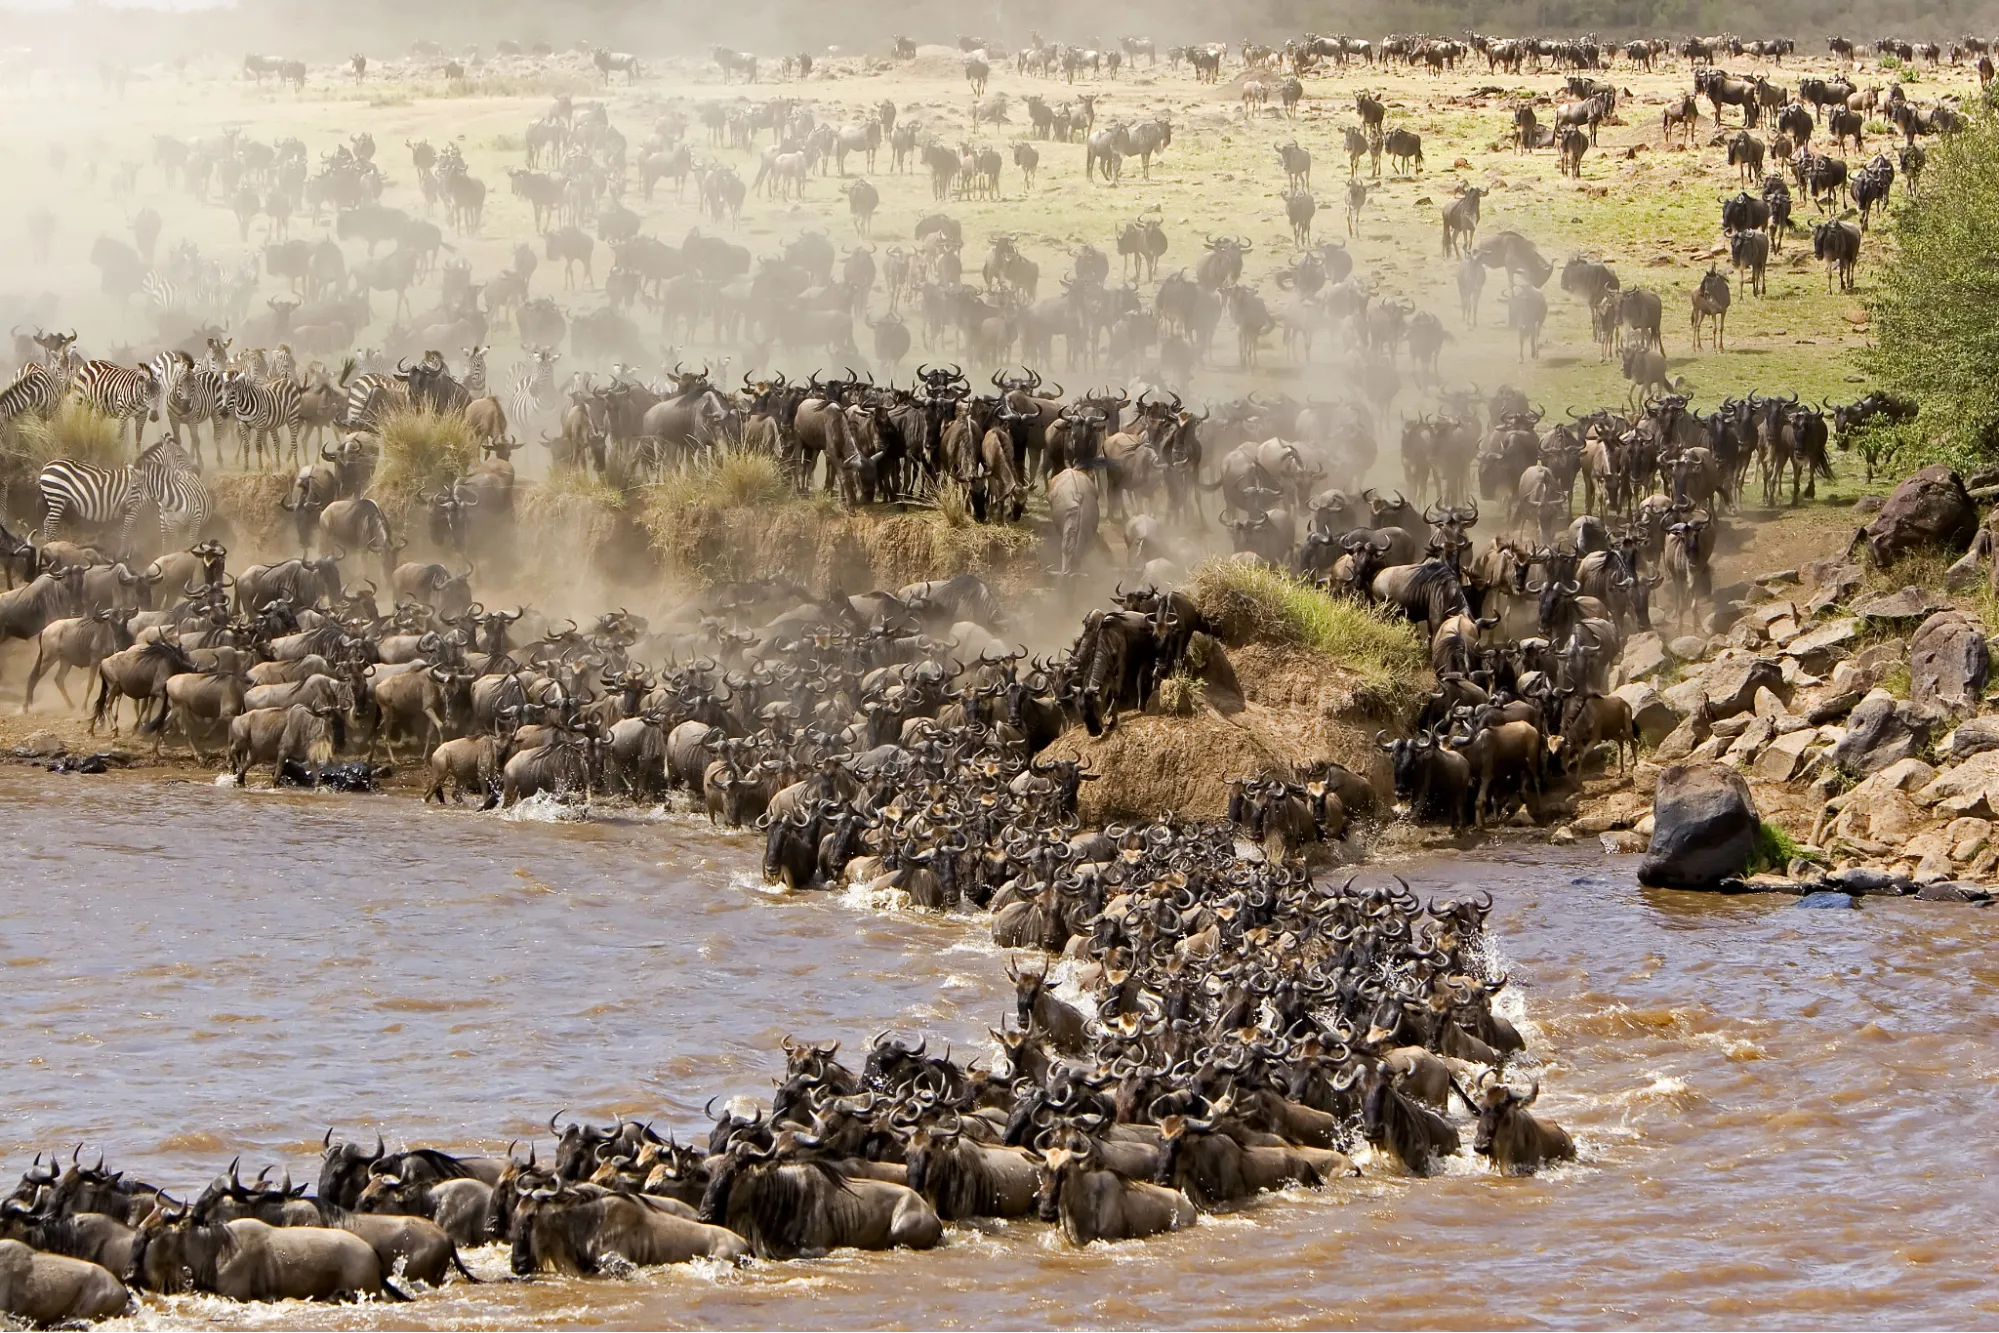 Wildebeest Migration Masai Mara 3 days 2 nights package - wildebeest crossing the Mara River